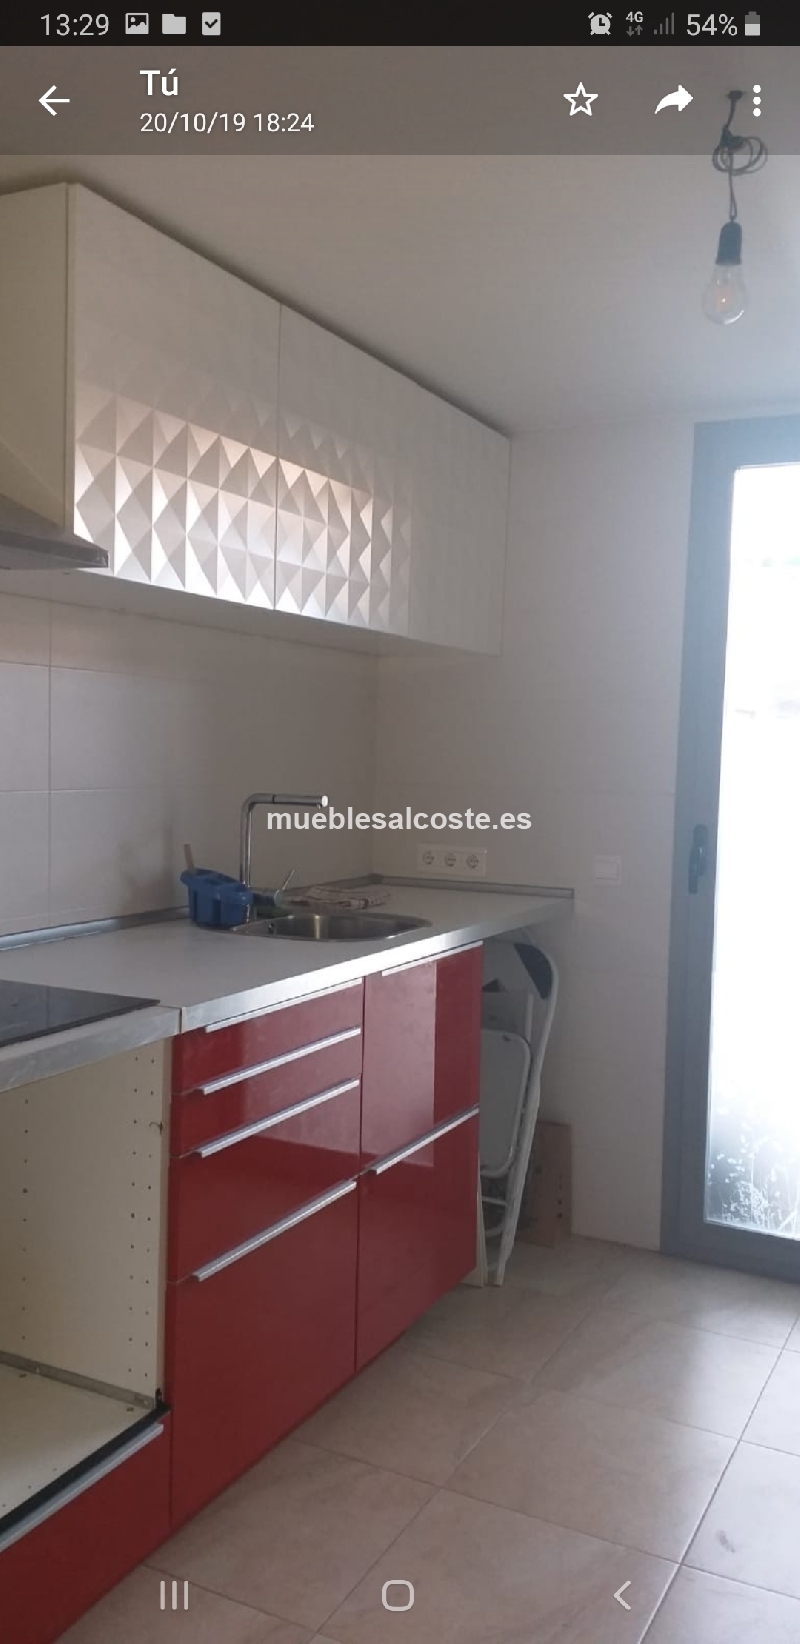 Cocinas, electro y muebles de cocina Alicante